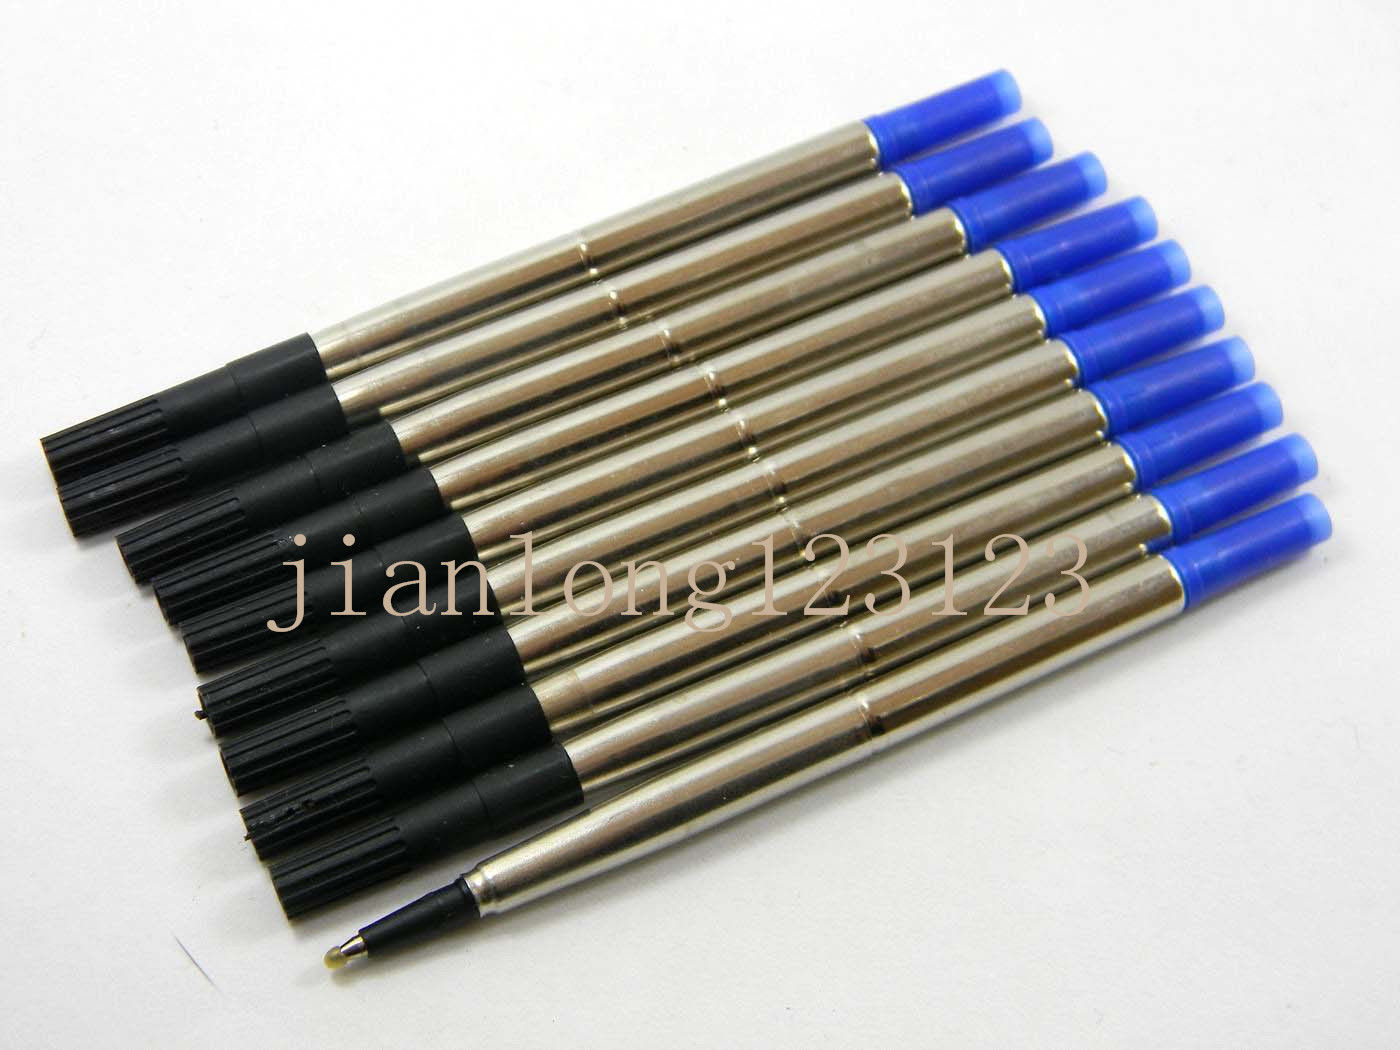 10pcs BLUE Parker style RollerBall Pen Refills 0.5mm Nib